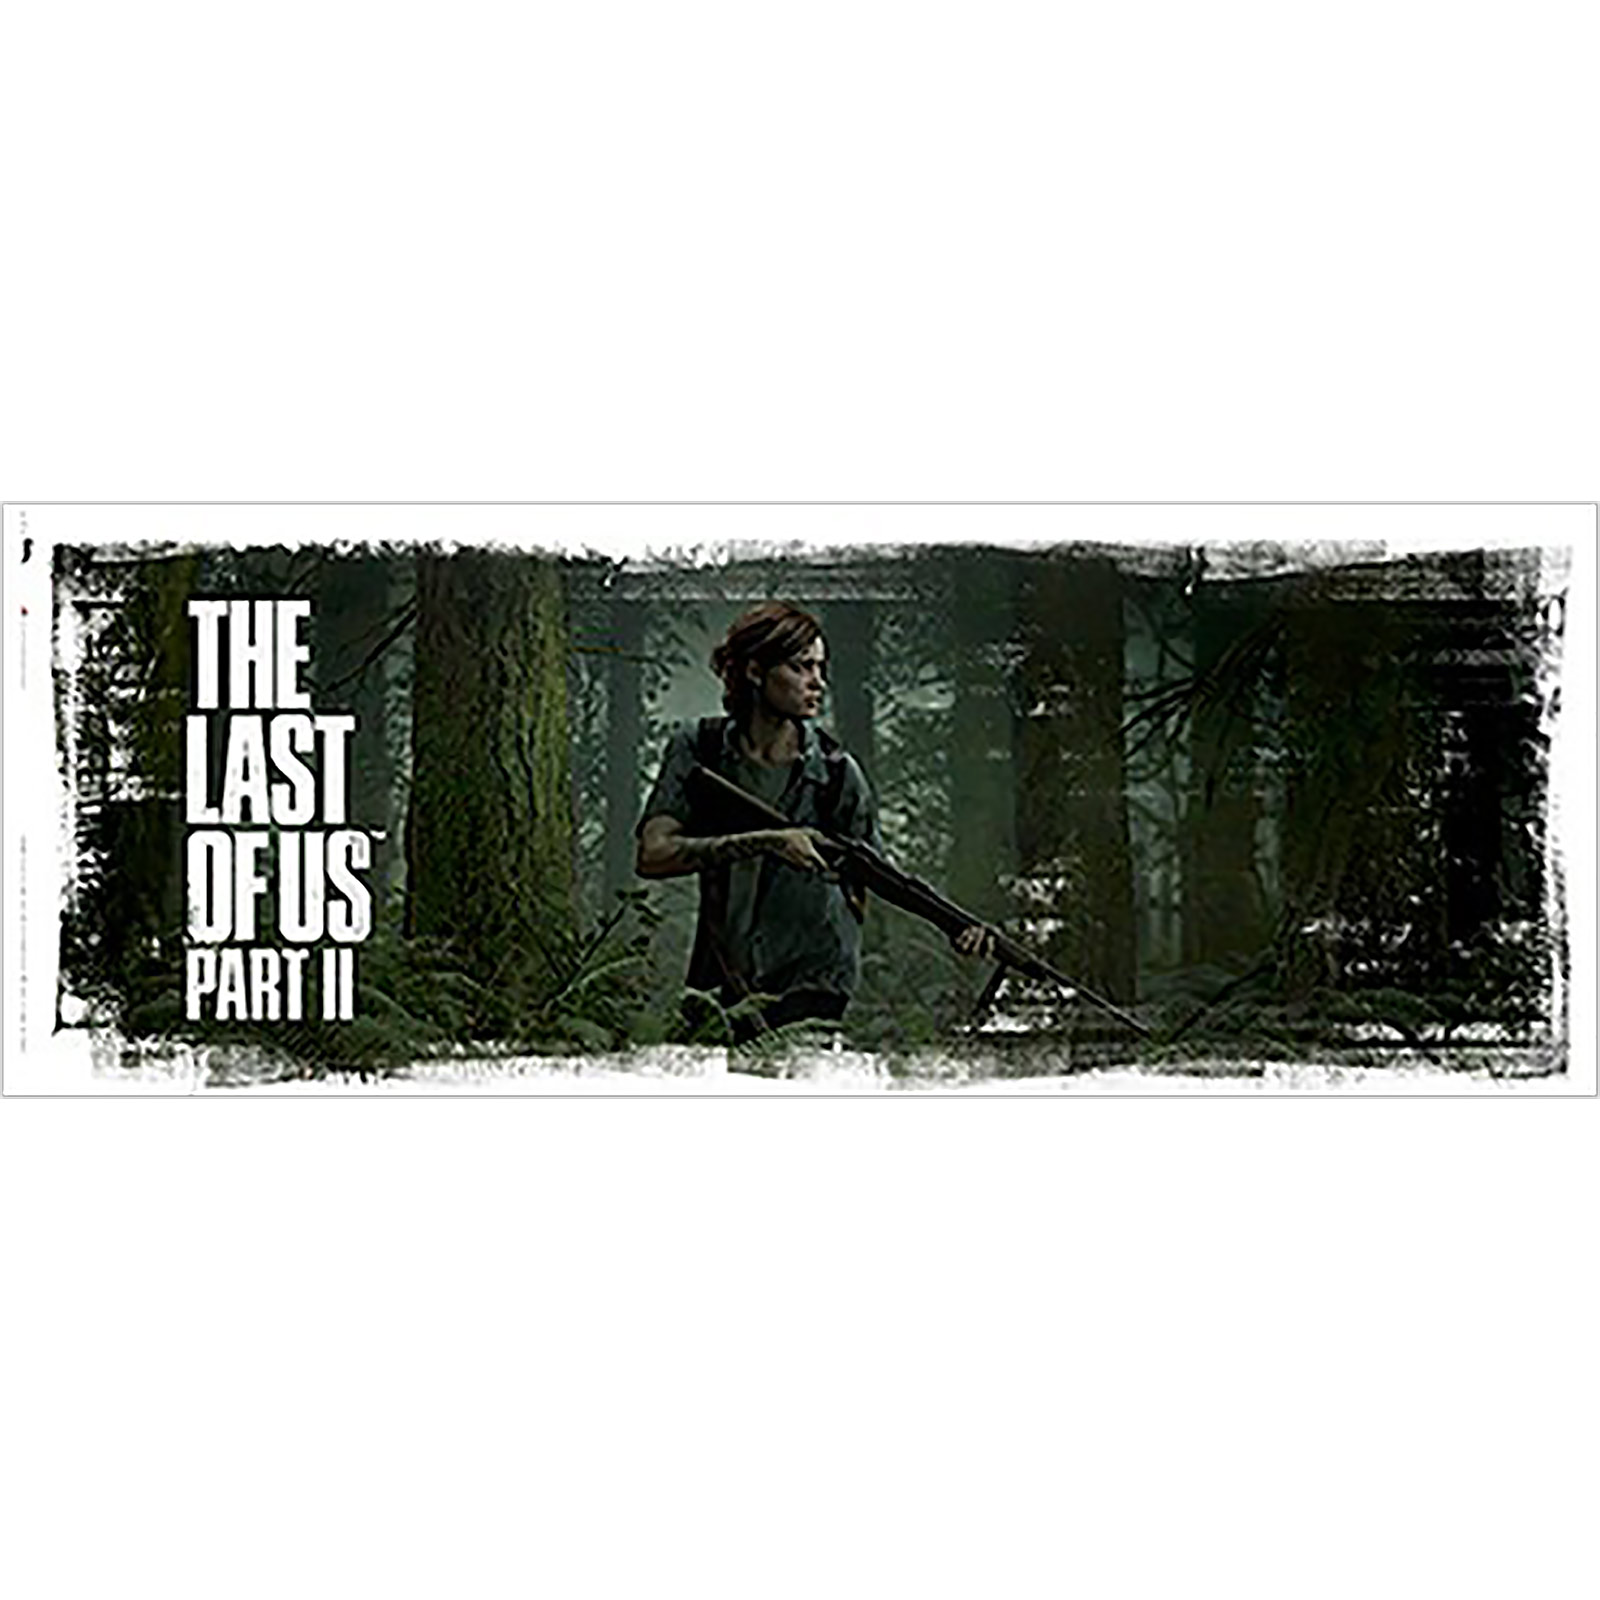 The Last of Us - Ellie Art Mok